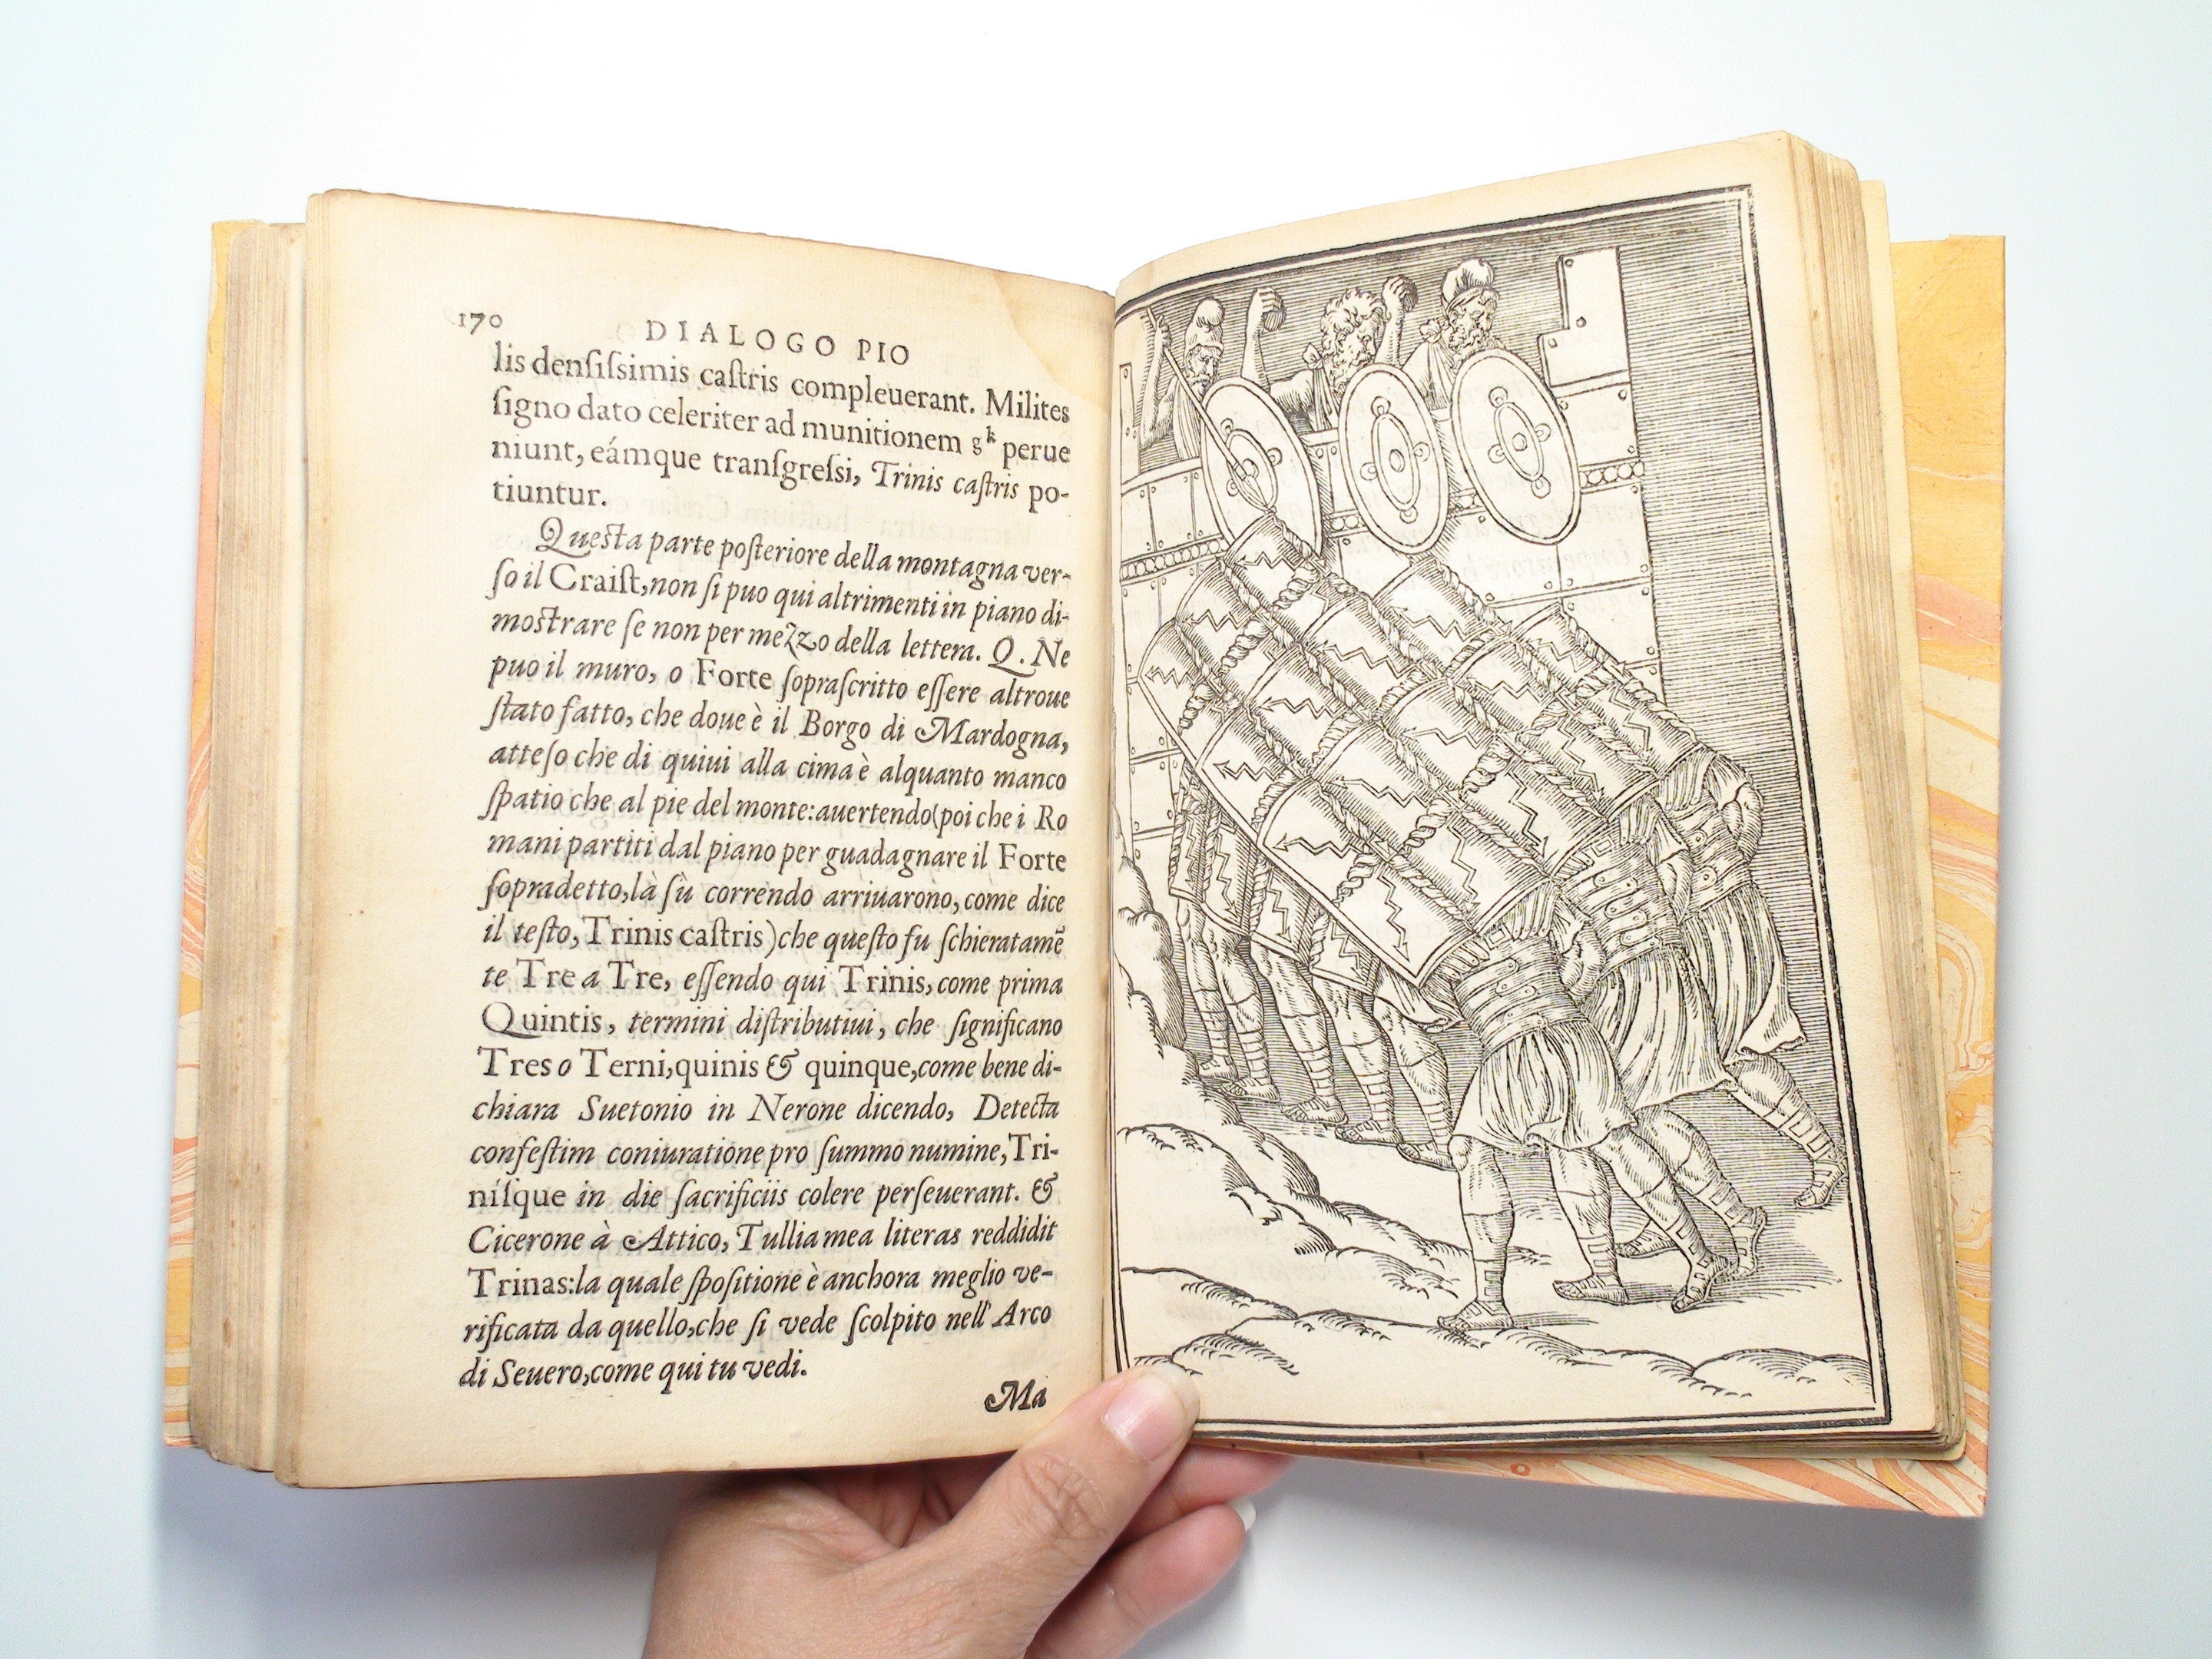 Dialogo Pio et Speculativo, Gabriele Simeoni, Illustrated, 1st Ed, Rare, 1560